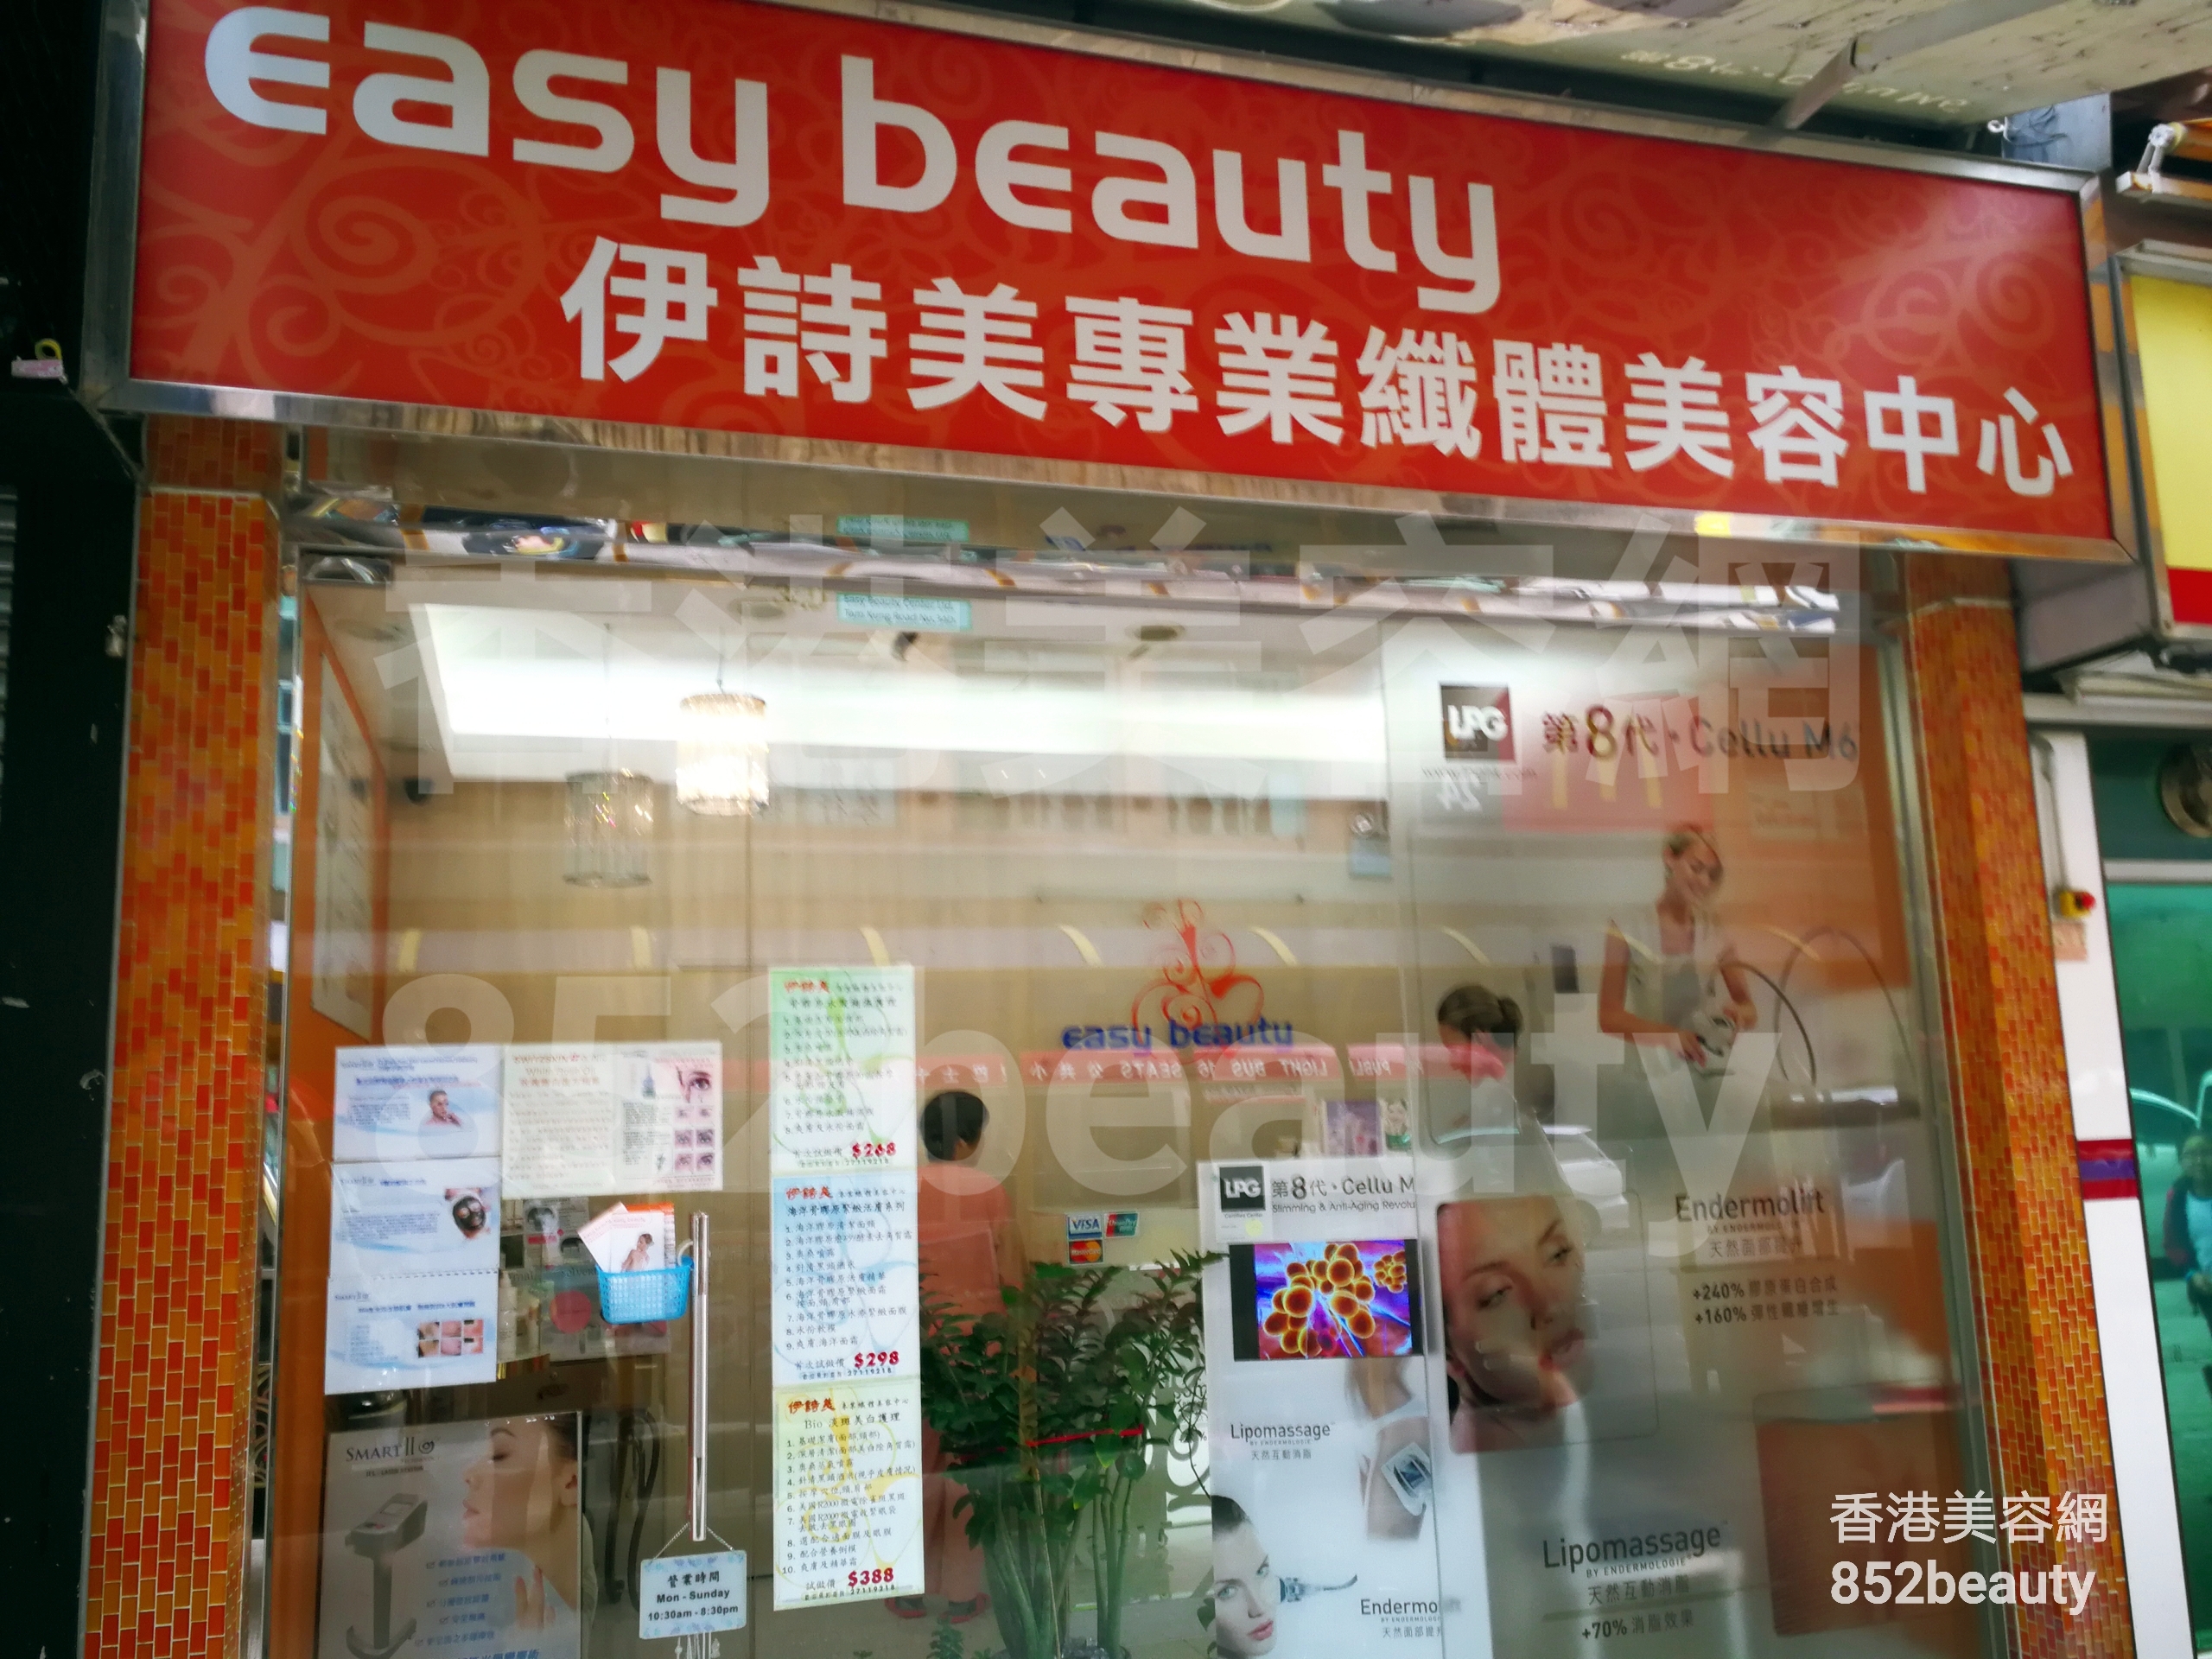 脫毛: Easy beauty 伊詩美專業纖體美容中心